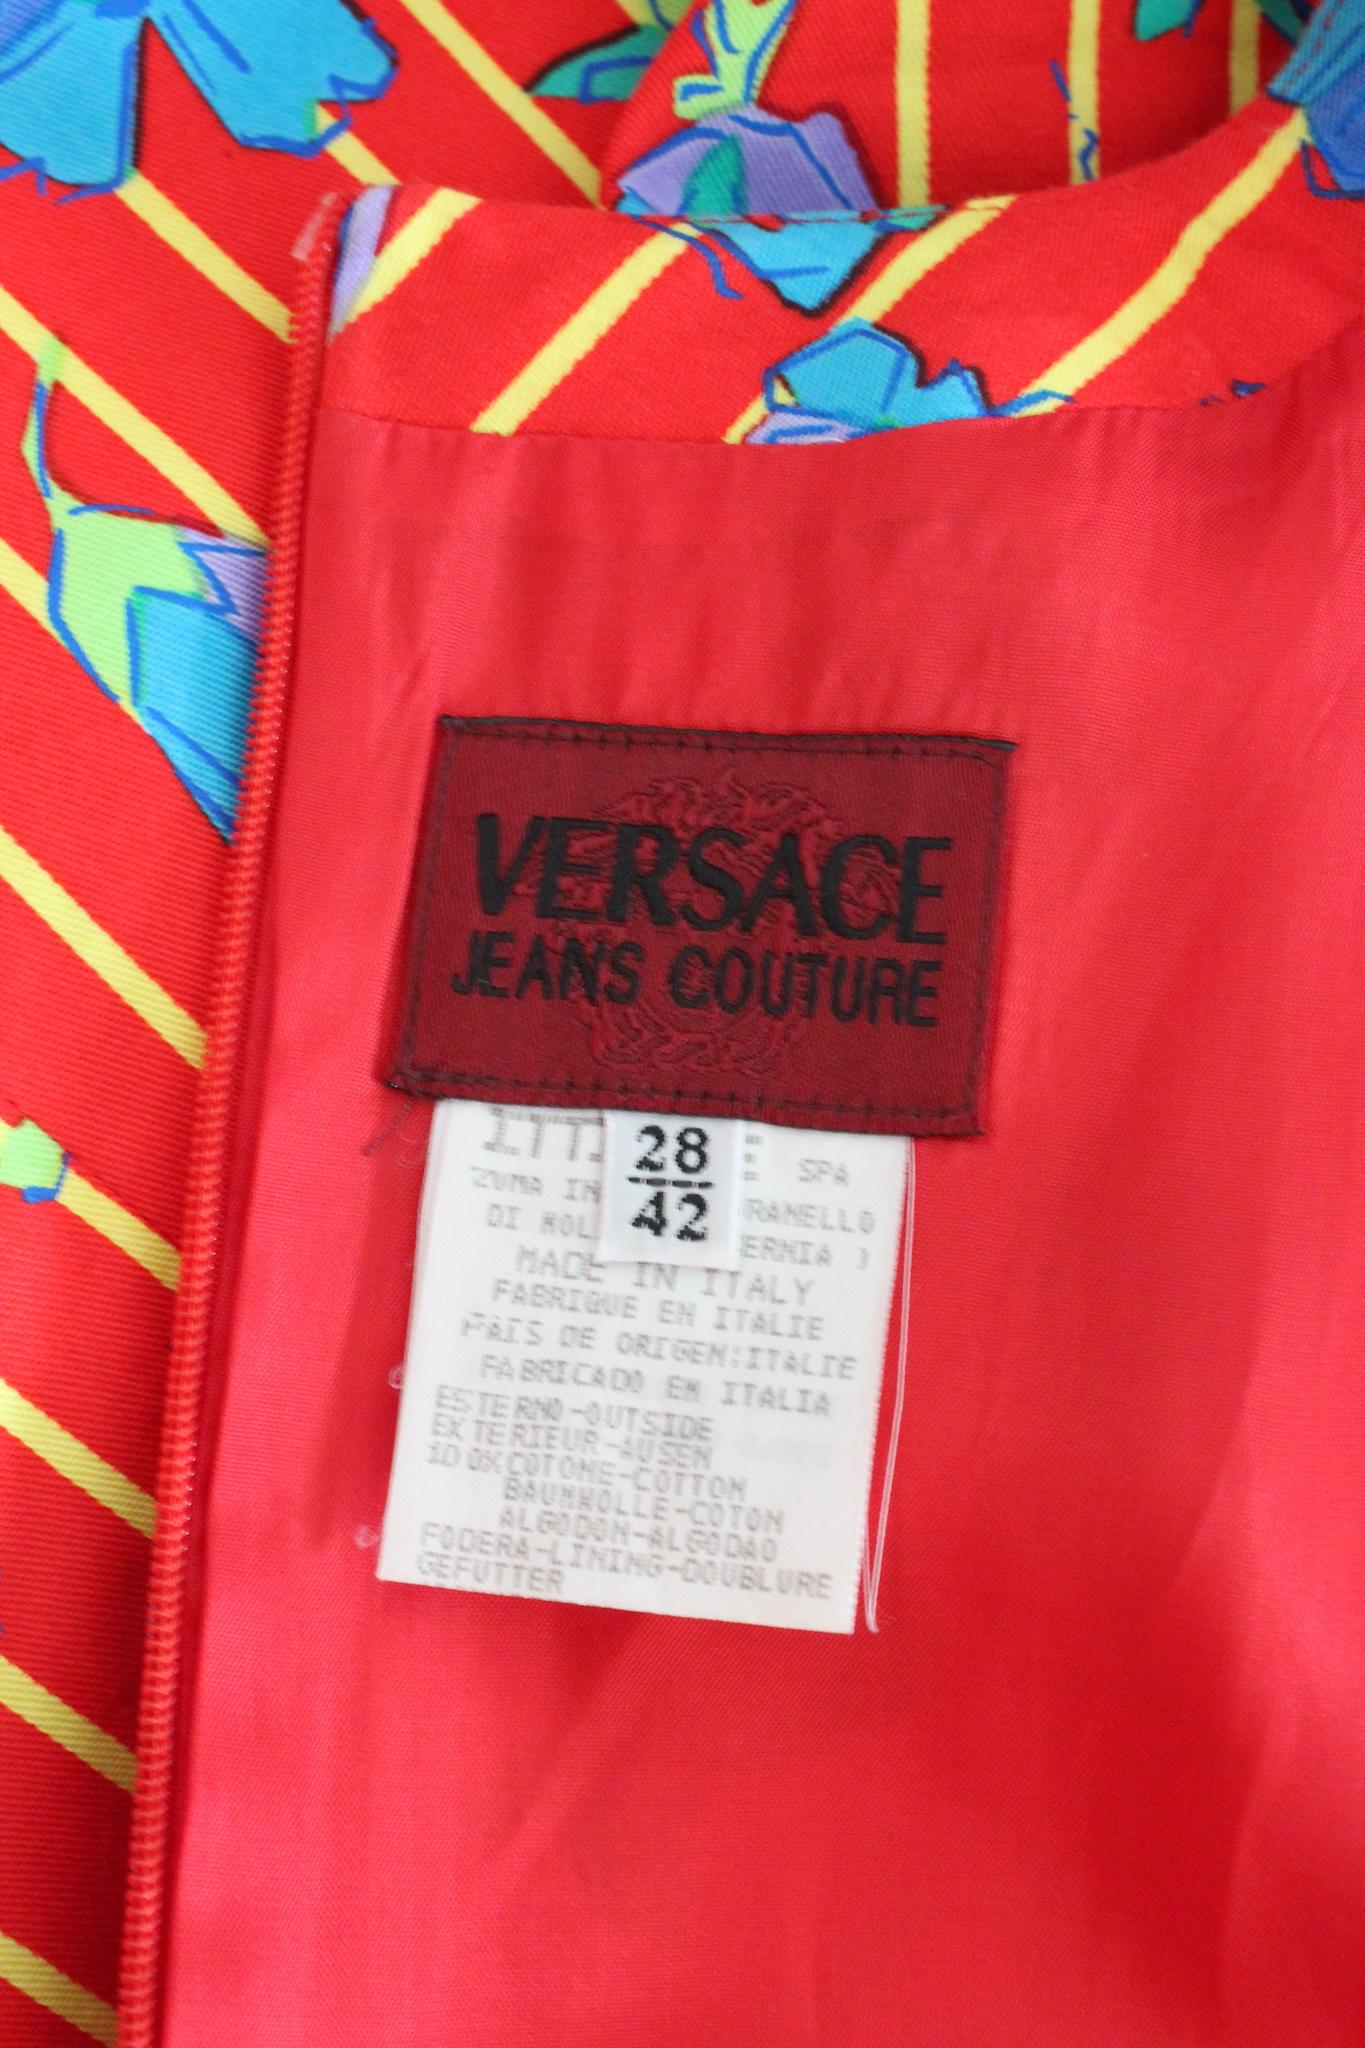 Robe vintage des années 90 de Versace Jeans Couture. Robe fourreau rouge à rayures jaunes et fleurs bleues. Tissu 100 % coton. Fabriquées en Italie.

Taille : 42 It 8 Us 10 Uk

Epaule : 27 cm
Buste/Poitrine : 46 cm
Taille : 45 cm
Longueur : 85 cm